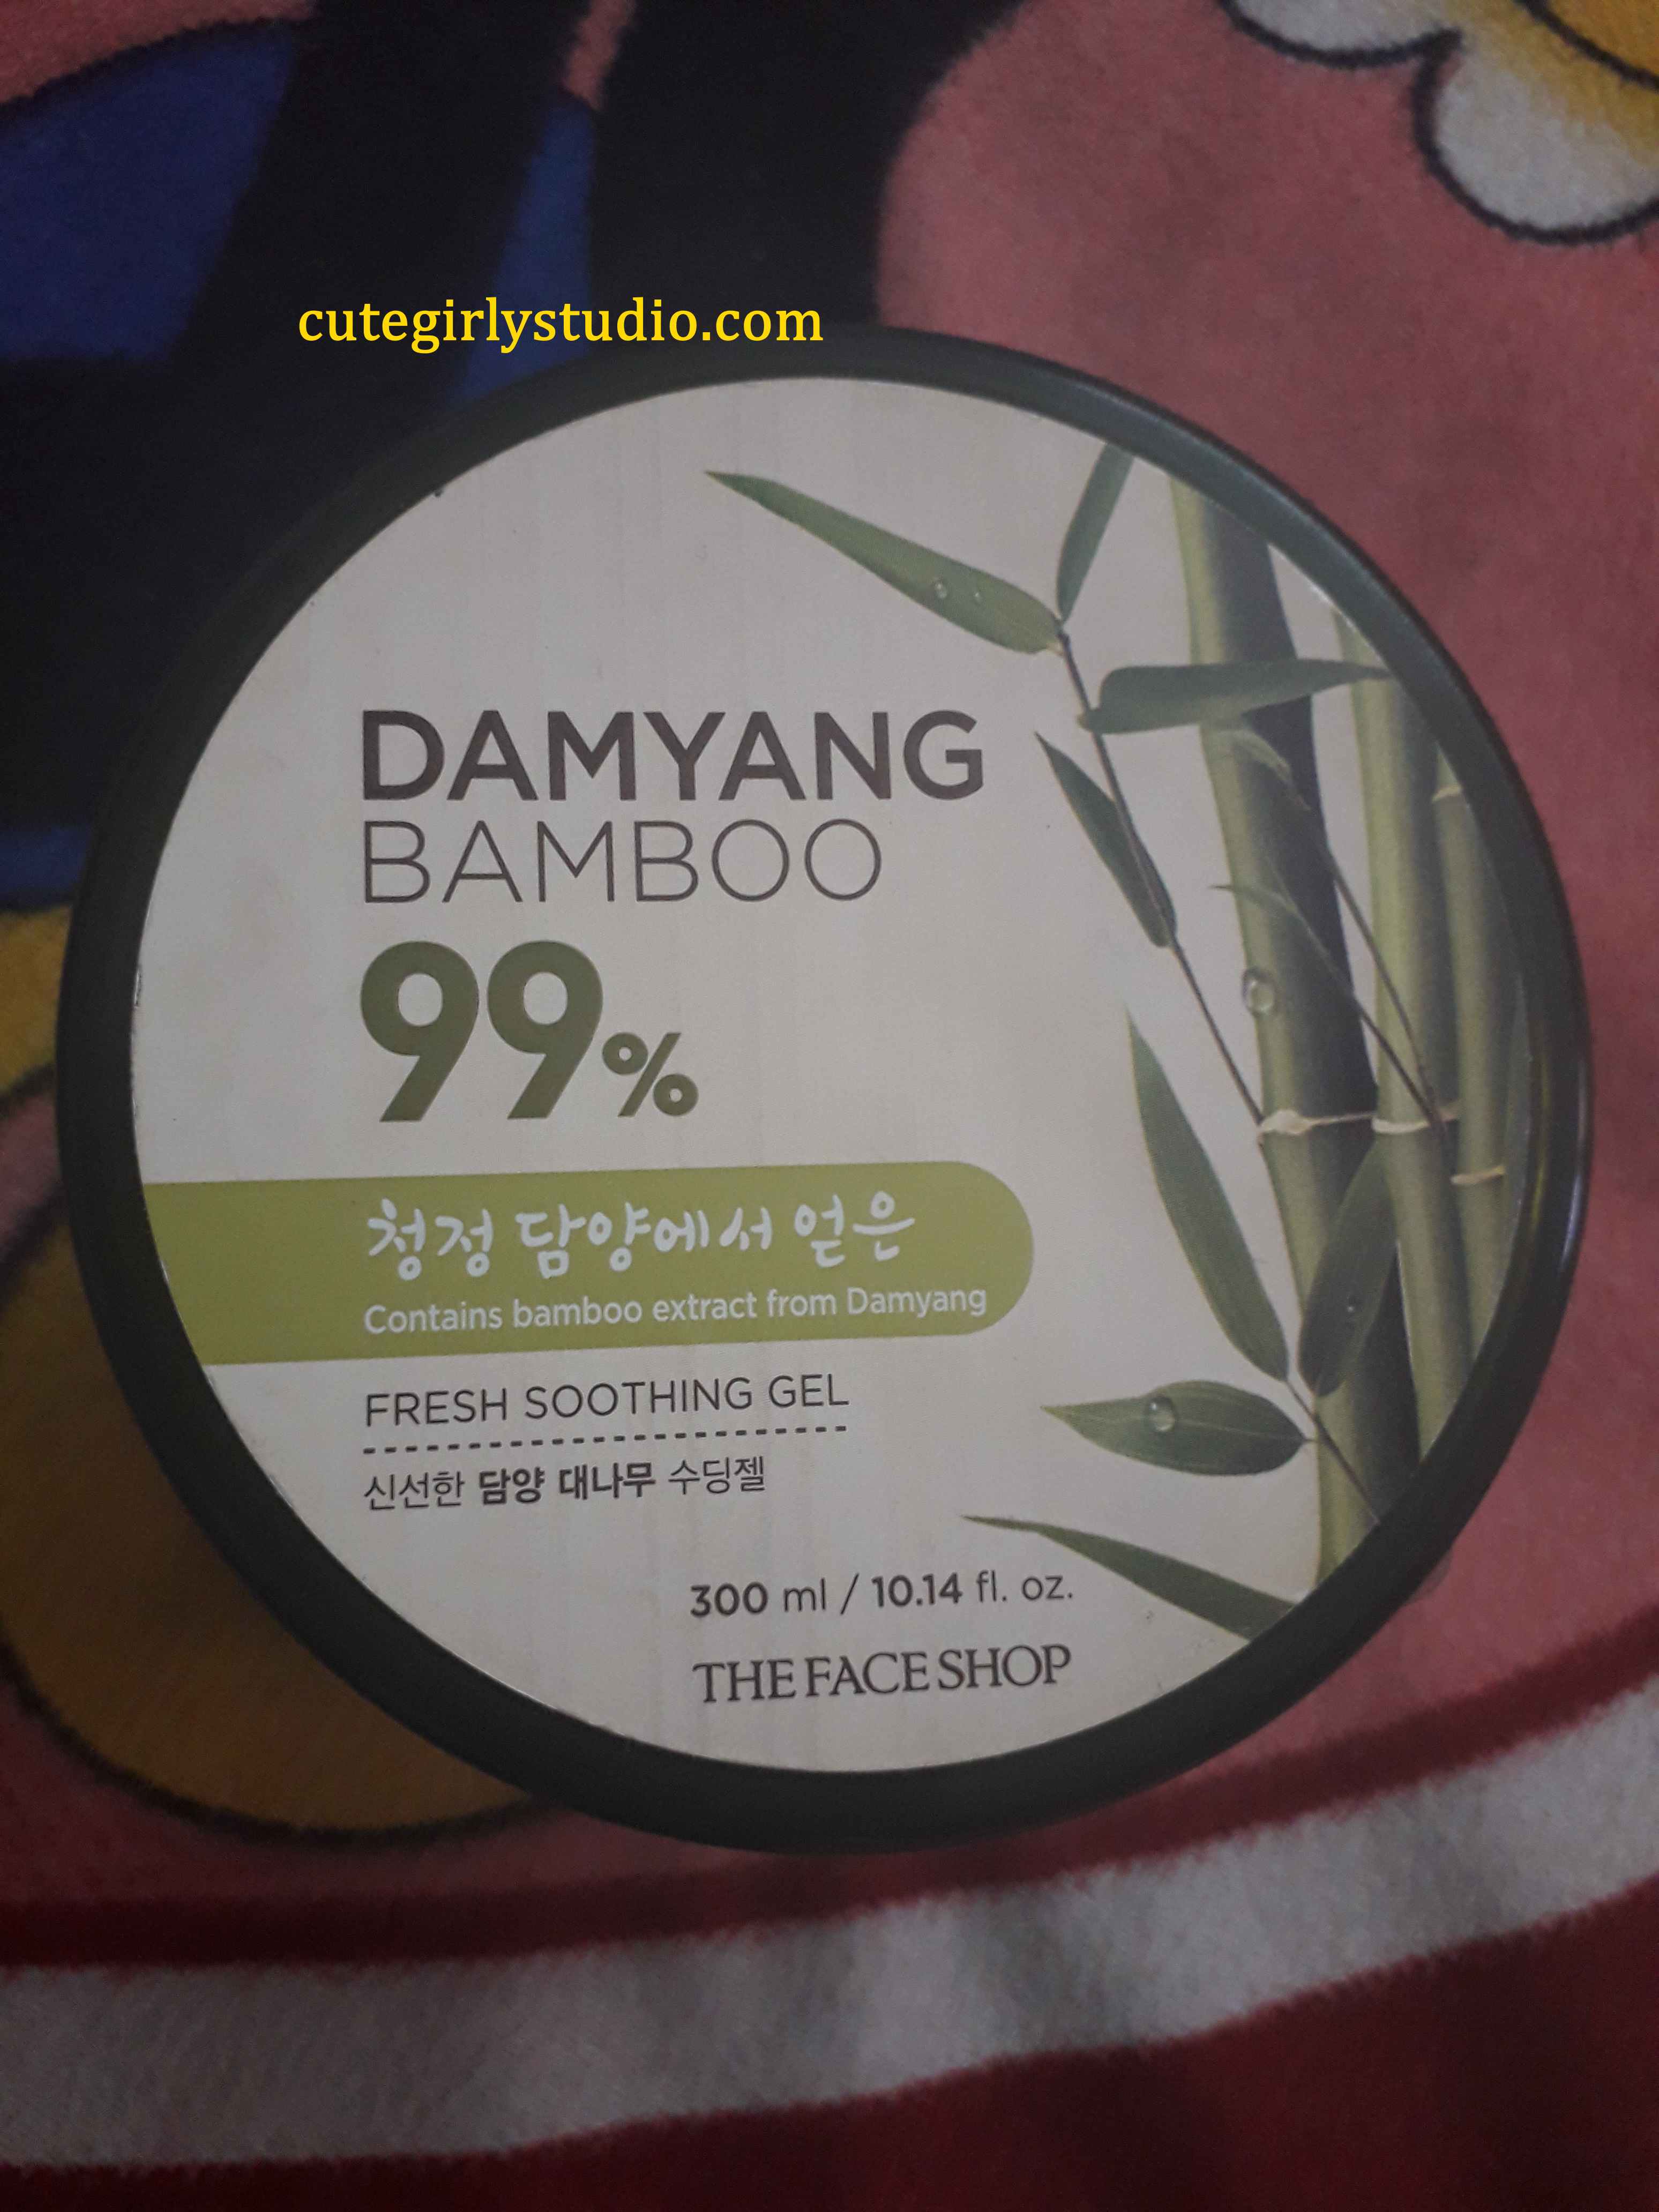 the face shop damyang bamboo gel